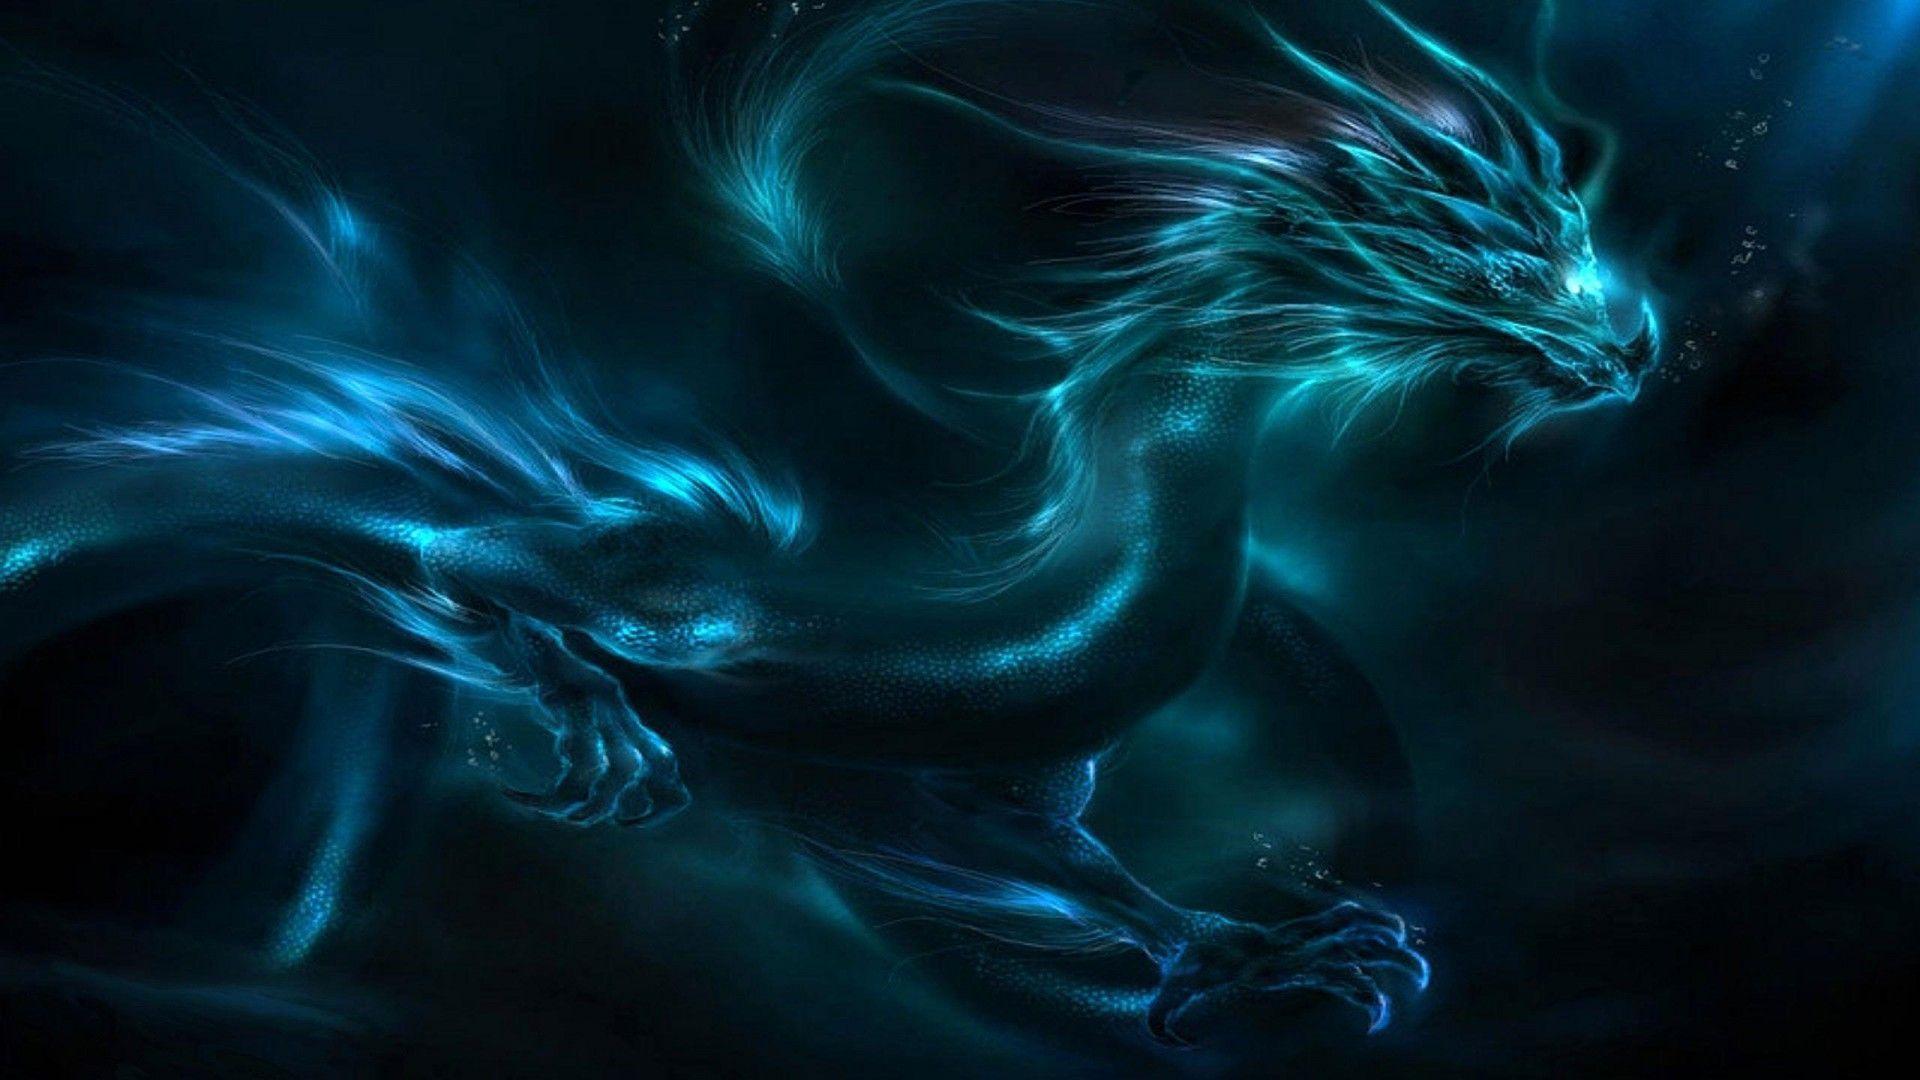 Blue Dragon Wallpaper HD. Dragon picture, Fantasy dragon, Blue dragon